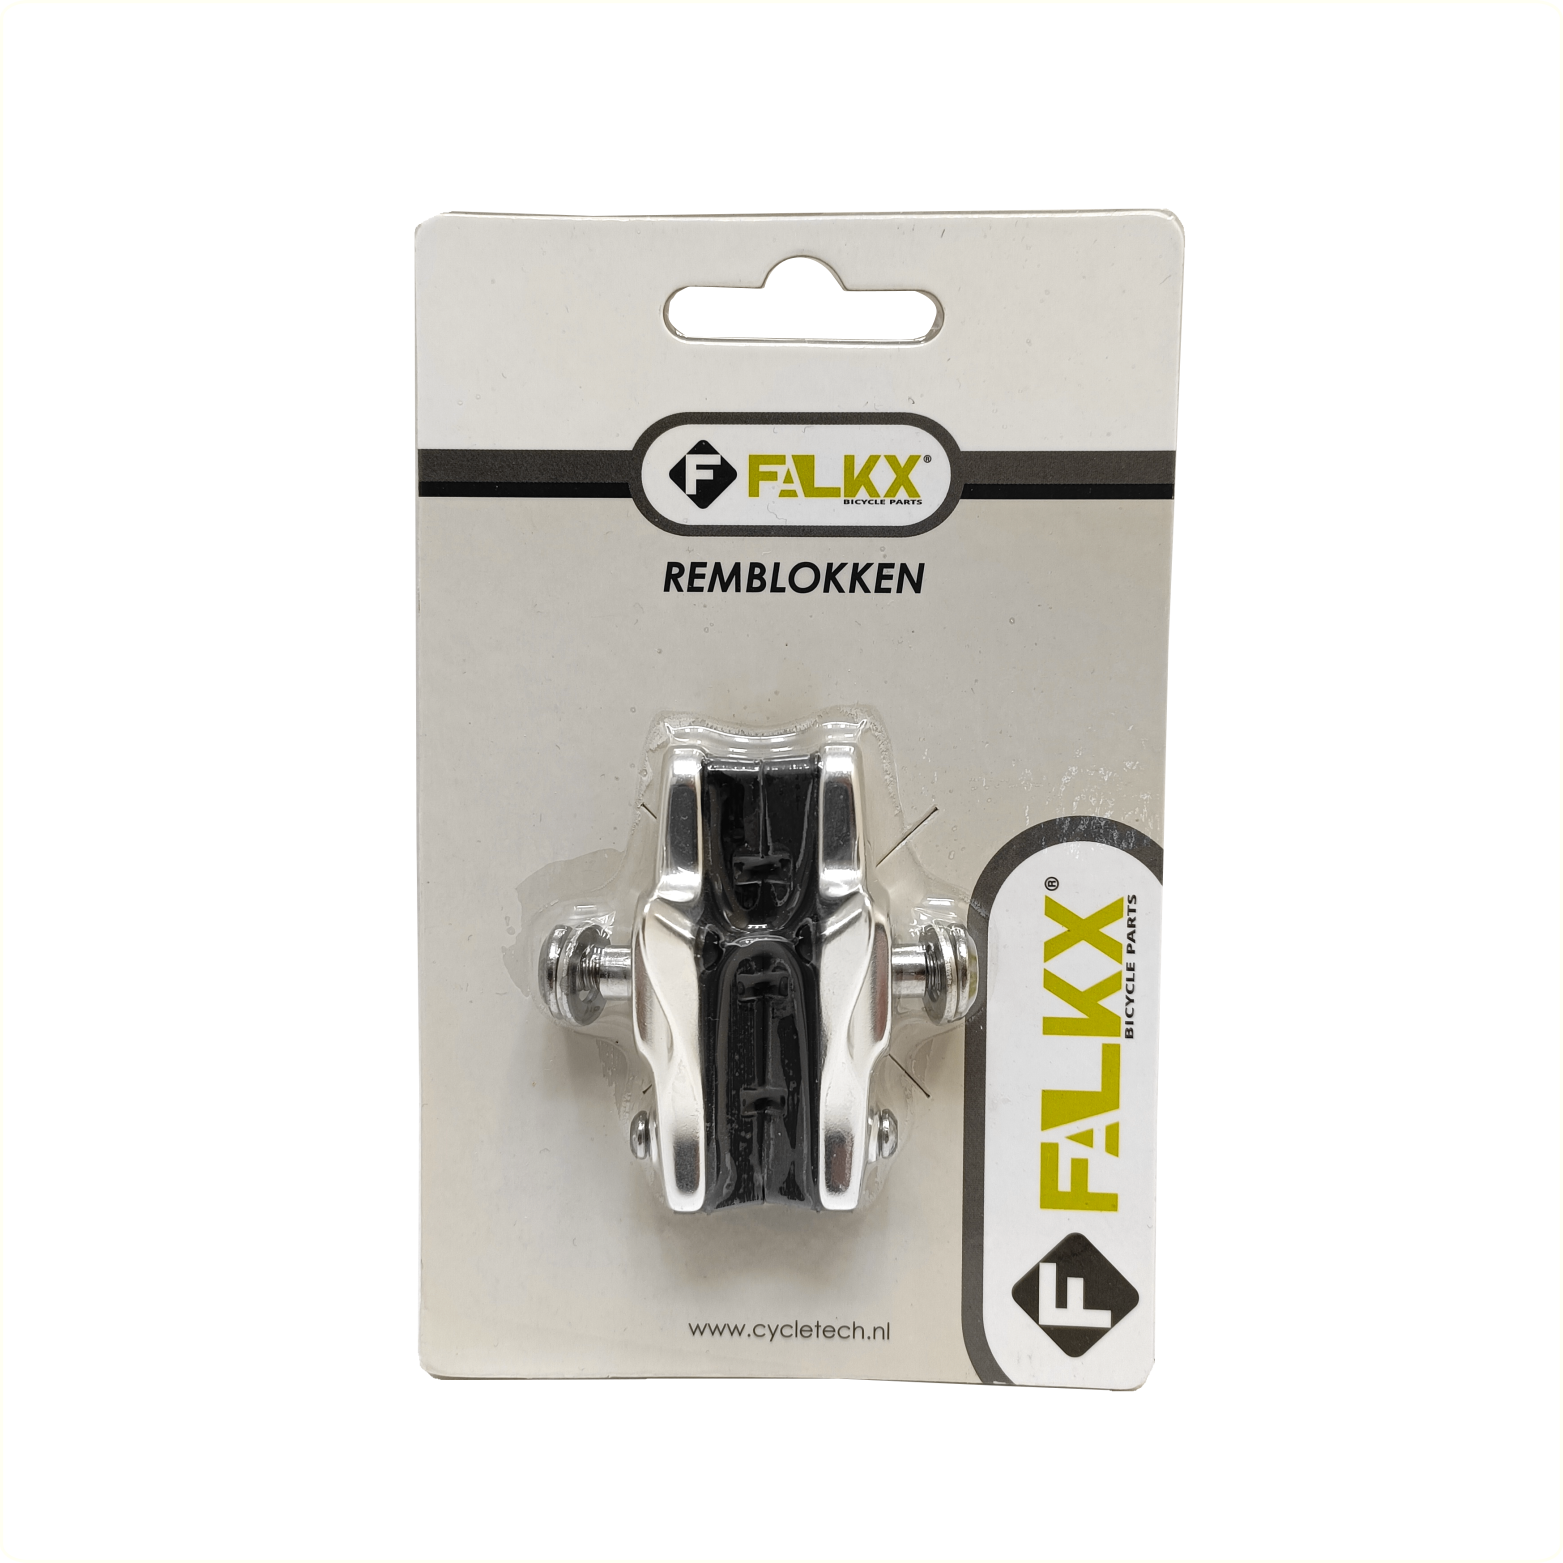 FALKX cartridge remblokken 50mm per paar, c(hangverpakking)